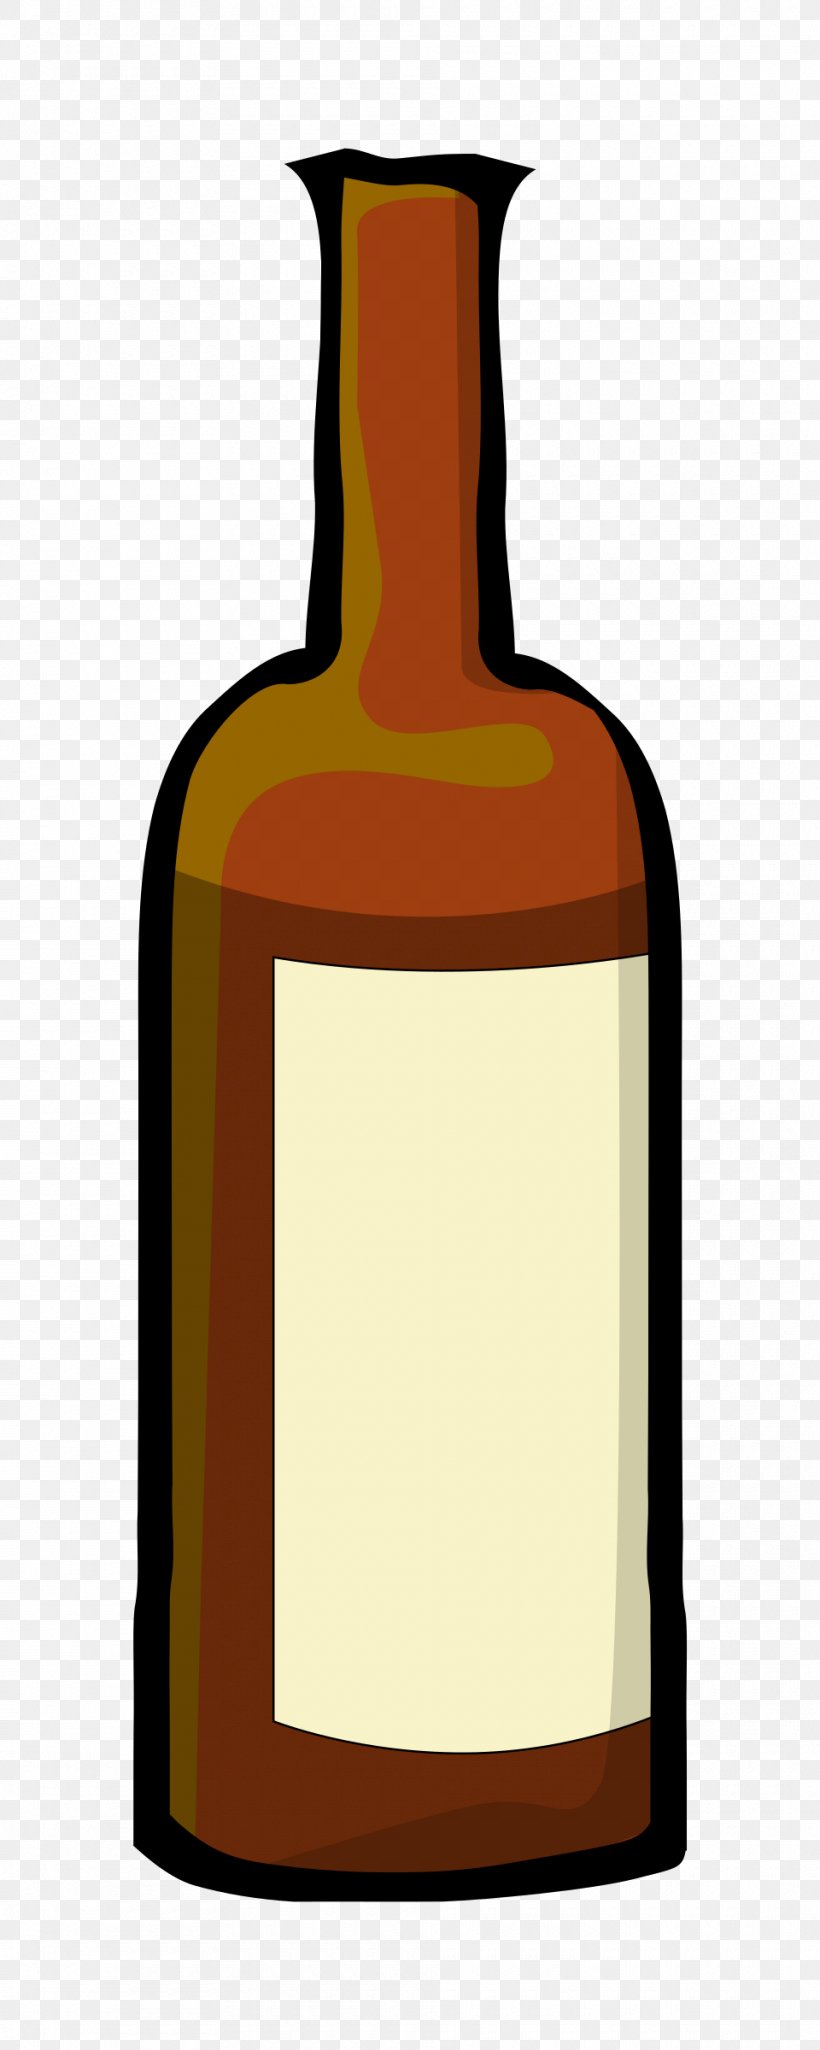 Red Wine Bottle Clip Art, PNG, 960x2400px, Wine, Beer, Beer Bottle, Beverage Can, Bottle Download Free